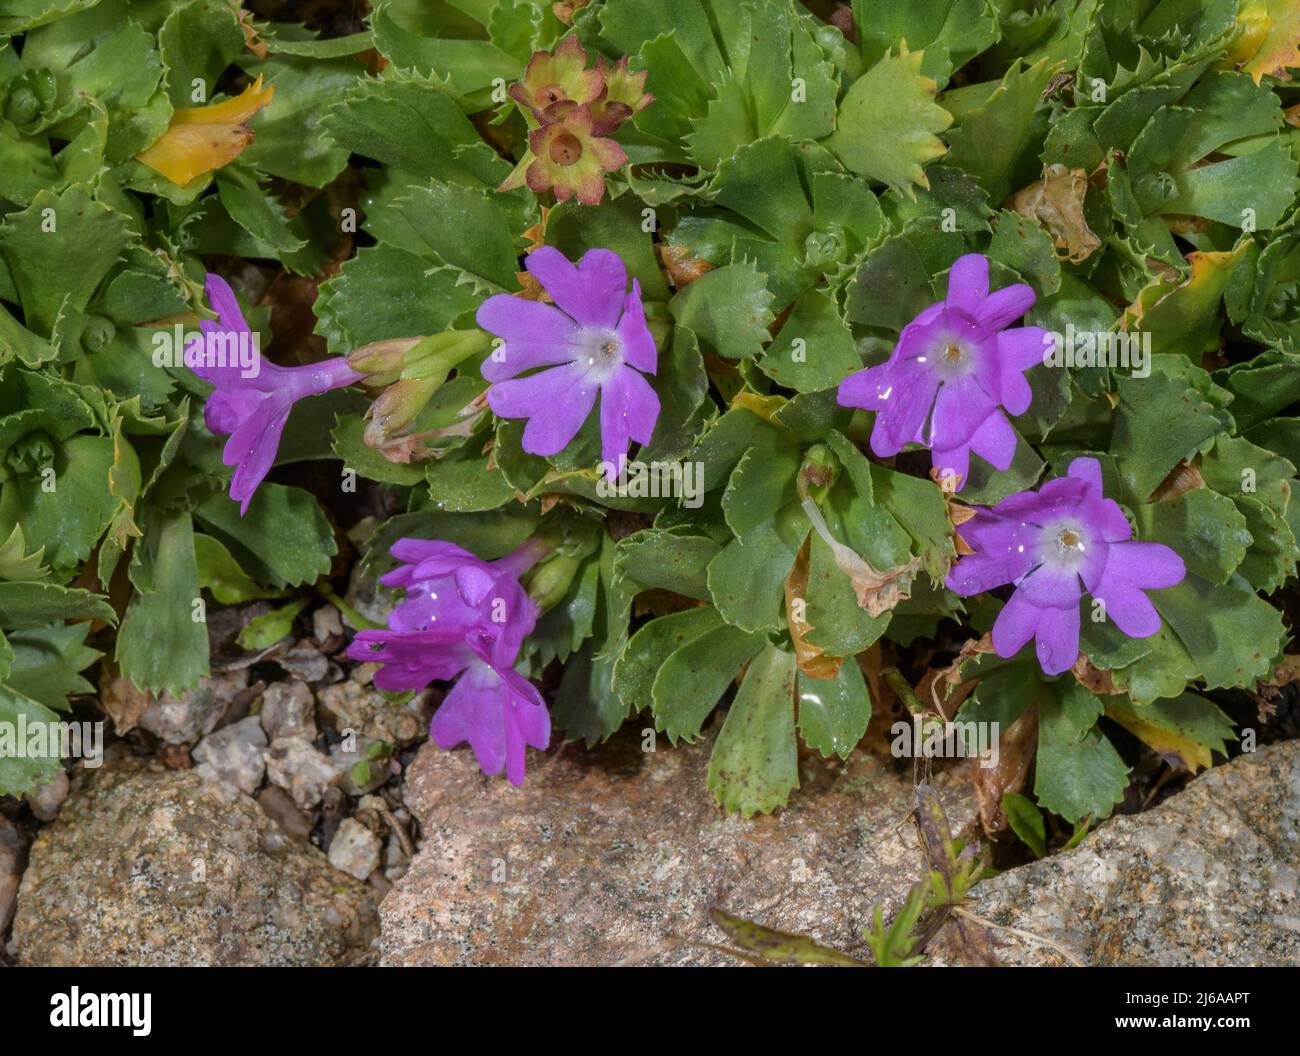 Primula x forsteri, (P. hirsuta x P. minima) in flower. Alps. Stock Photo